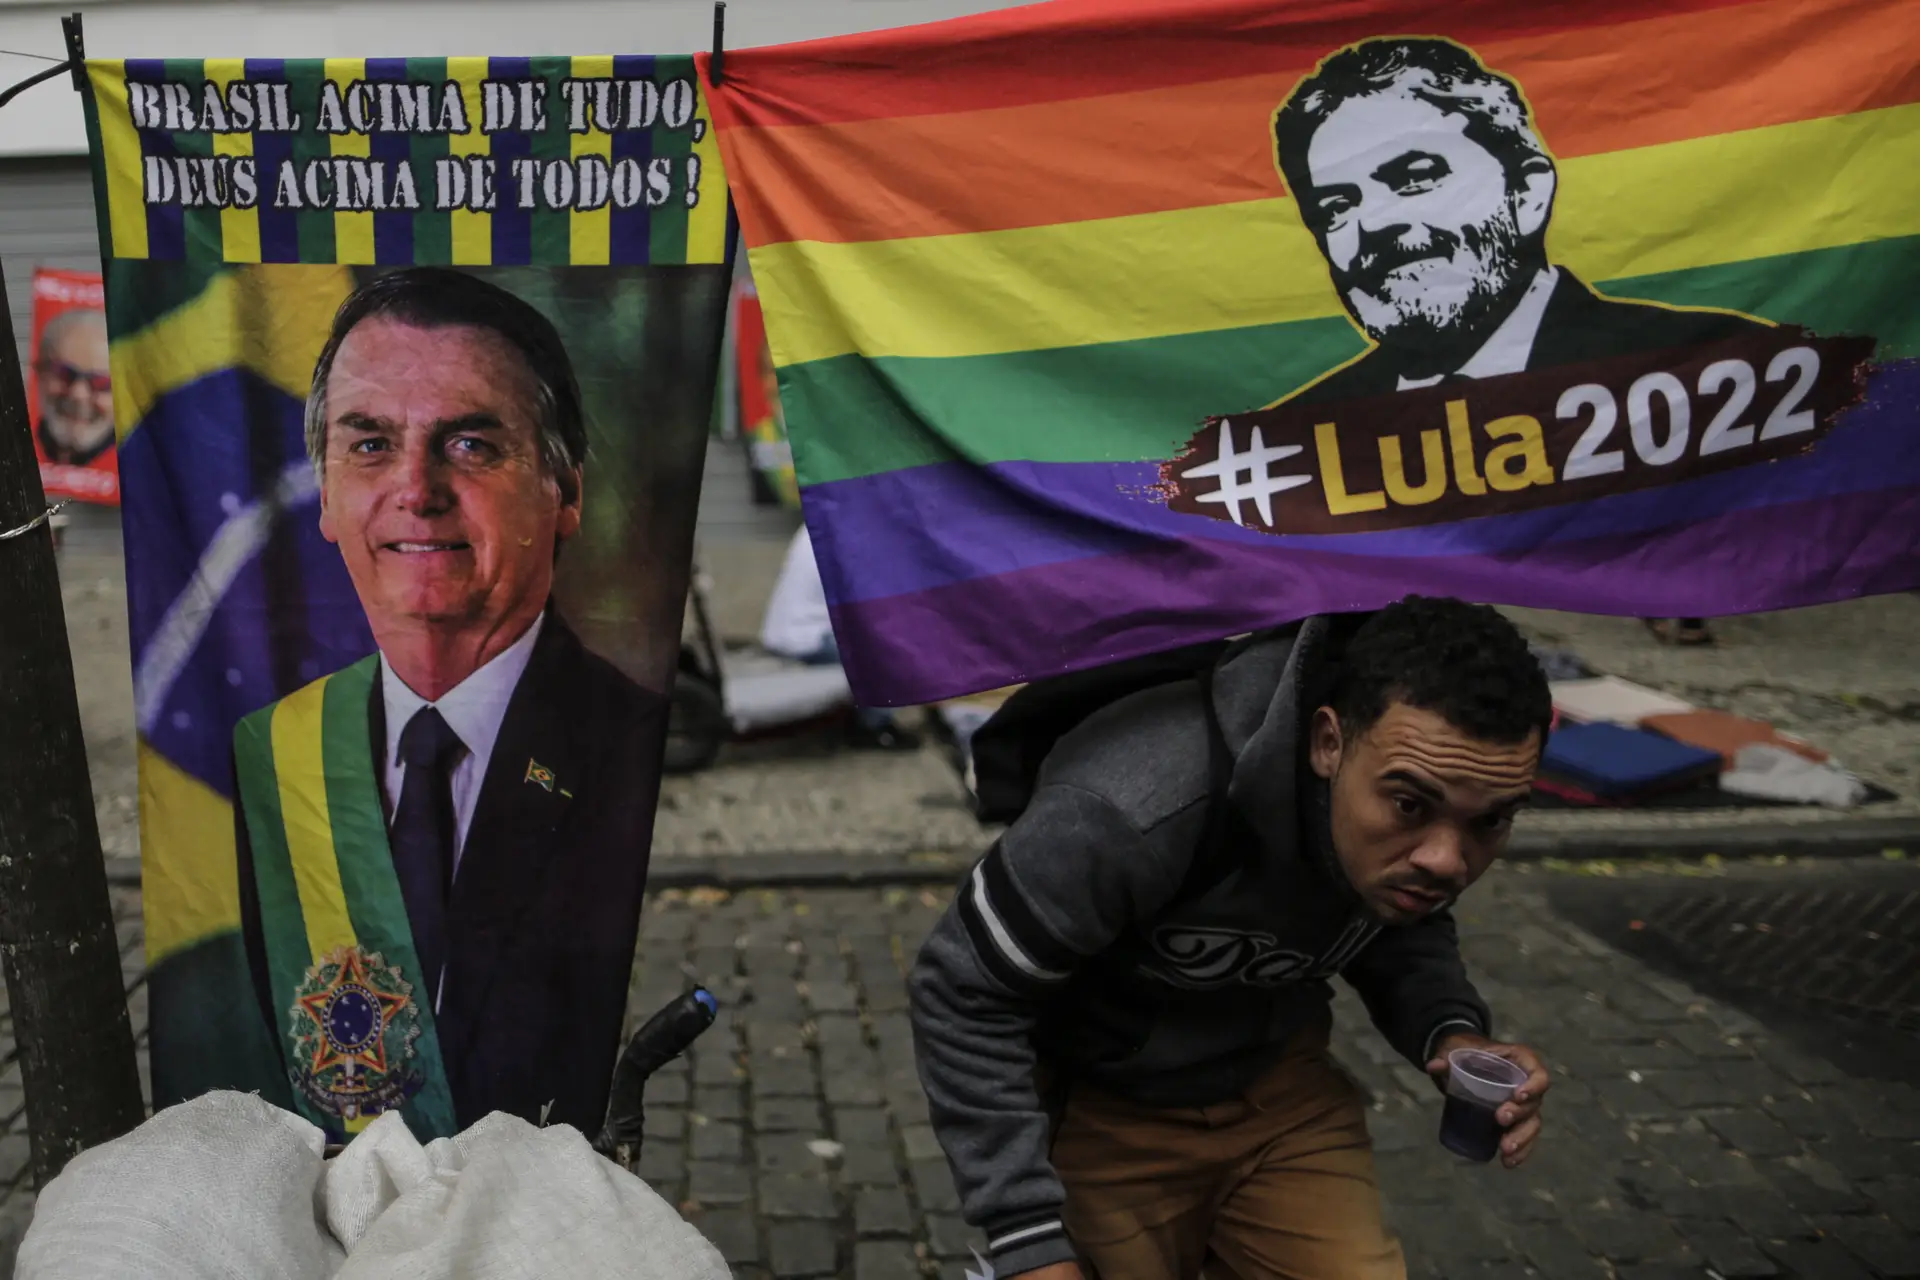 Sondagem aponta para vitória de Lula com 51% dos votos, Bolsonaro com 42%